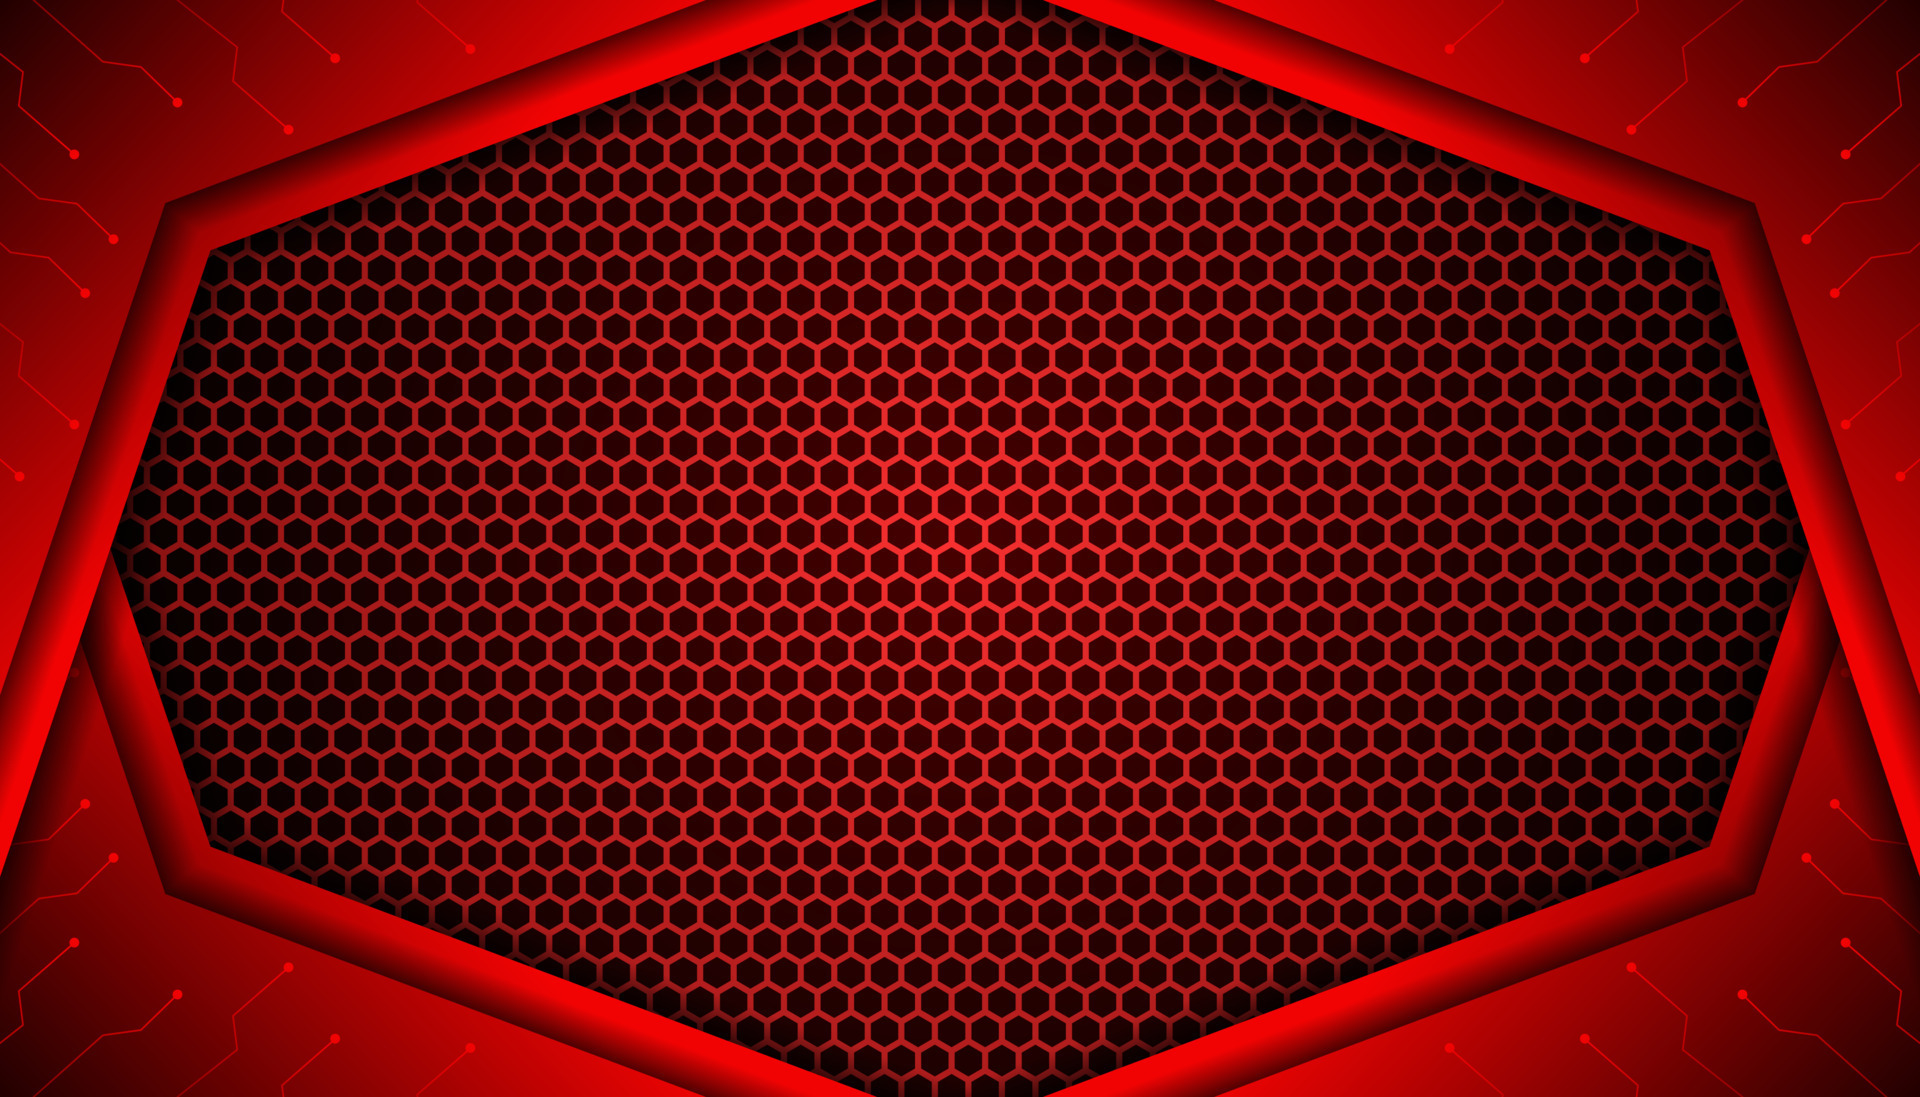 Hình nền trò chơi tương lai màu đỏ đen có hình lục giác là một sự lựa chọn tuyệt vời nếu bạn muốn một gam màu sôi động và nổi bật. Hình độc đáo và sắc nét sẽ khiến bạn ngây ngất.